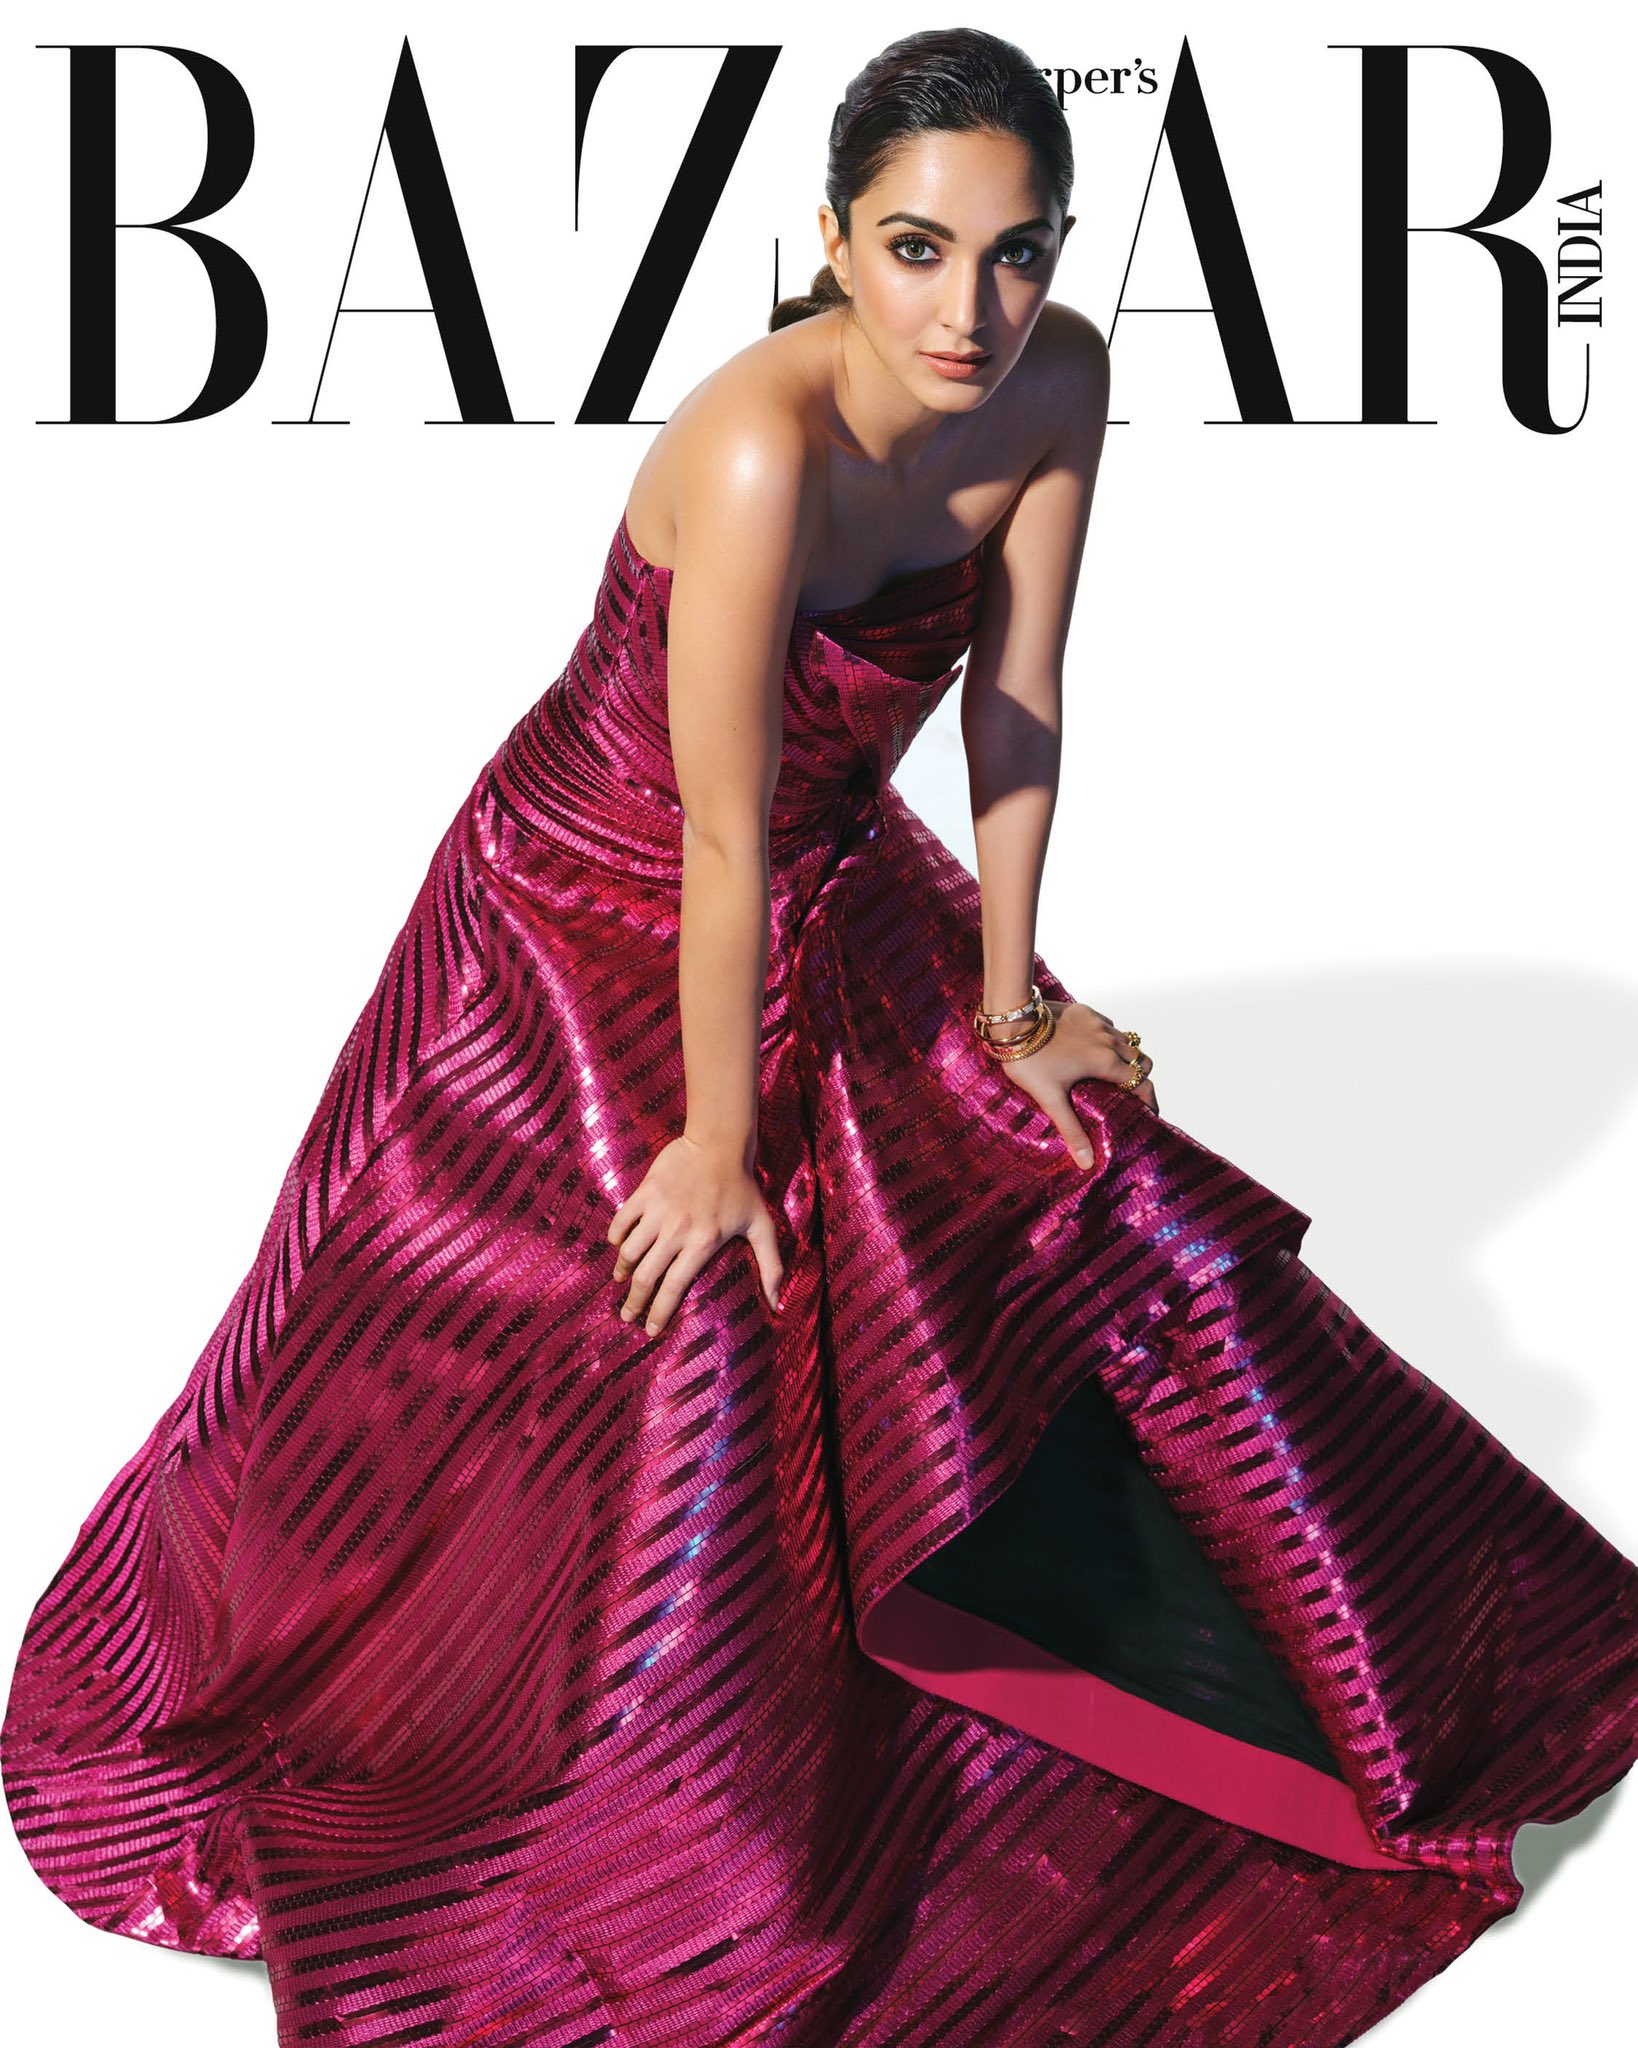 Kiara Advani shot for Harper's Bazaar Magazine cover.